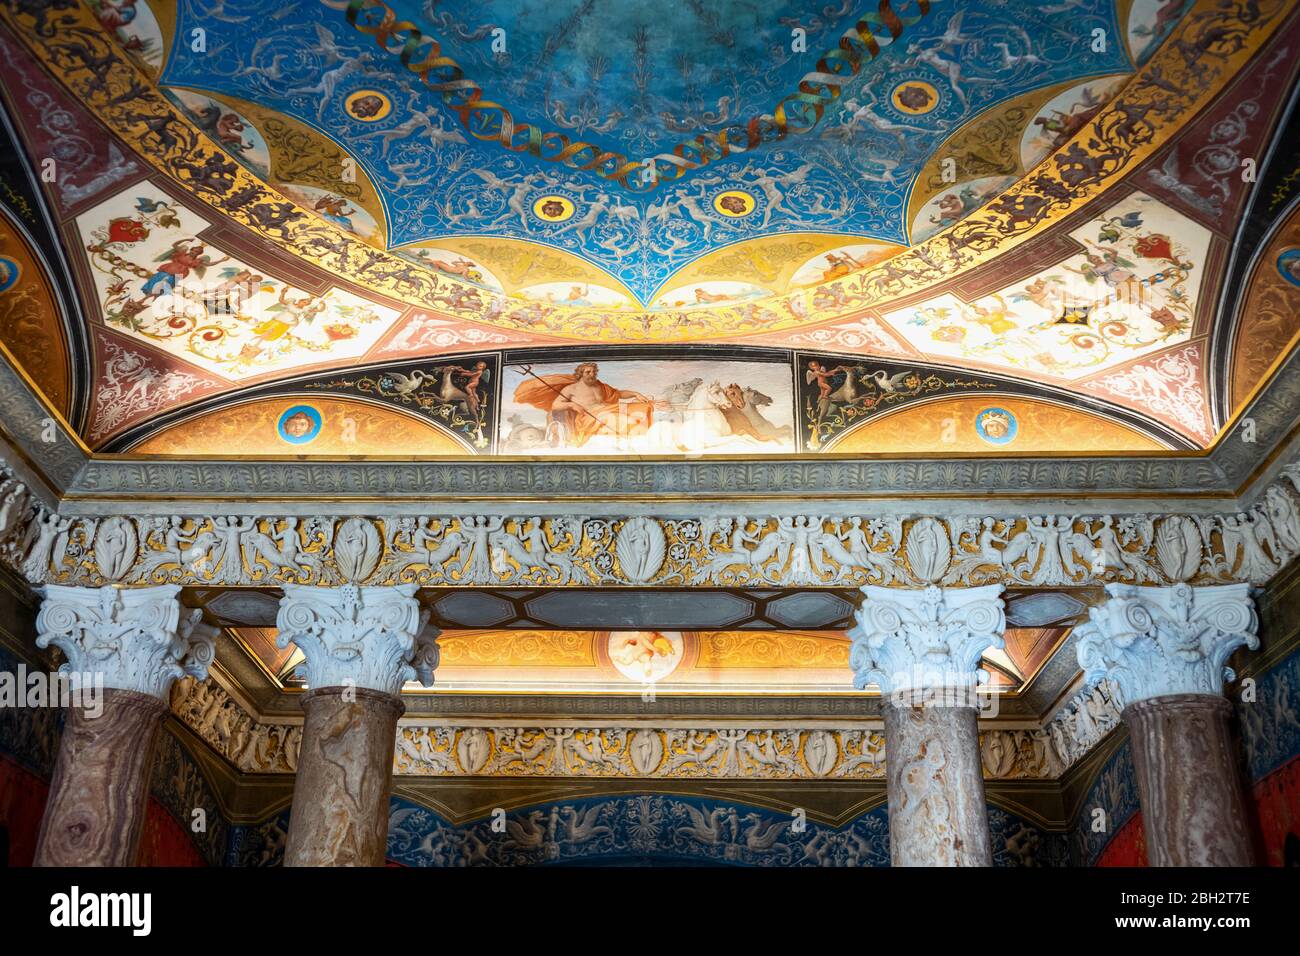 Roma, Italia - 20 agosto 2017: Villa Torlonia, particolare del soffitto del grande bagno con figure mitologiche di divinità Foto Stock